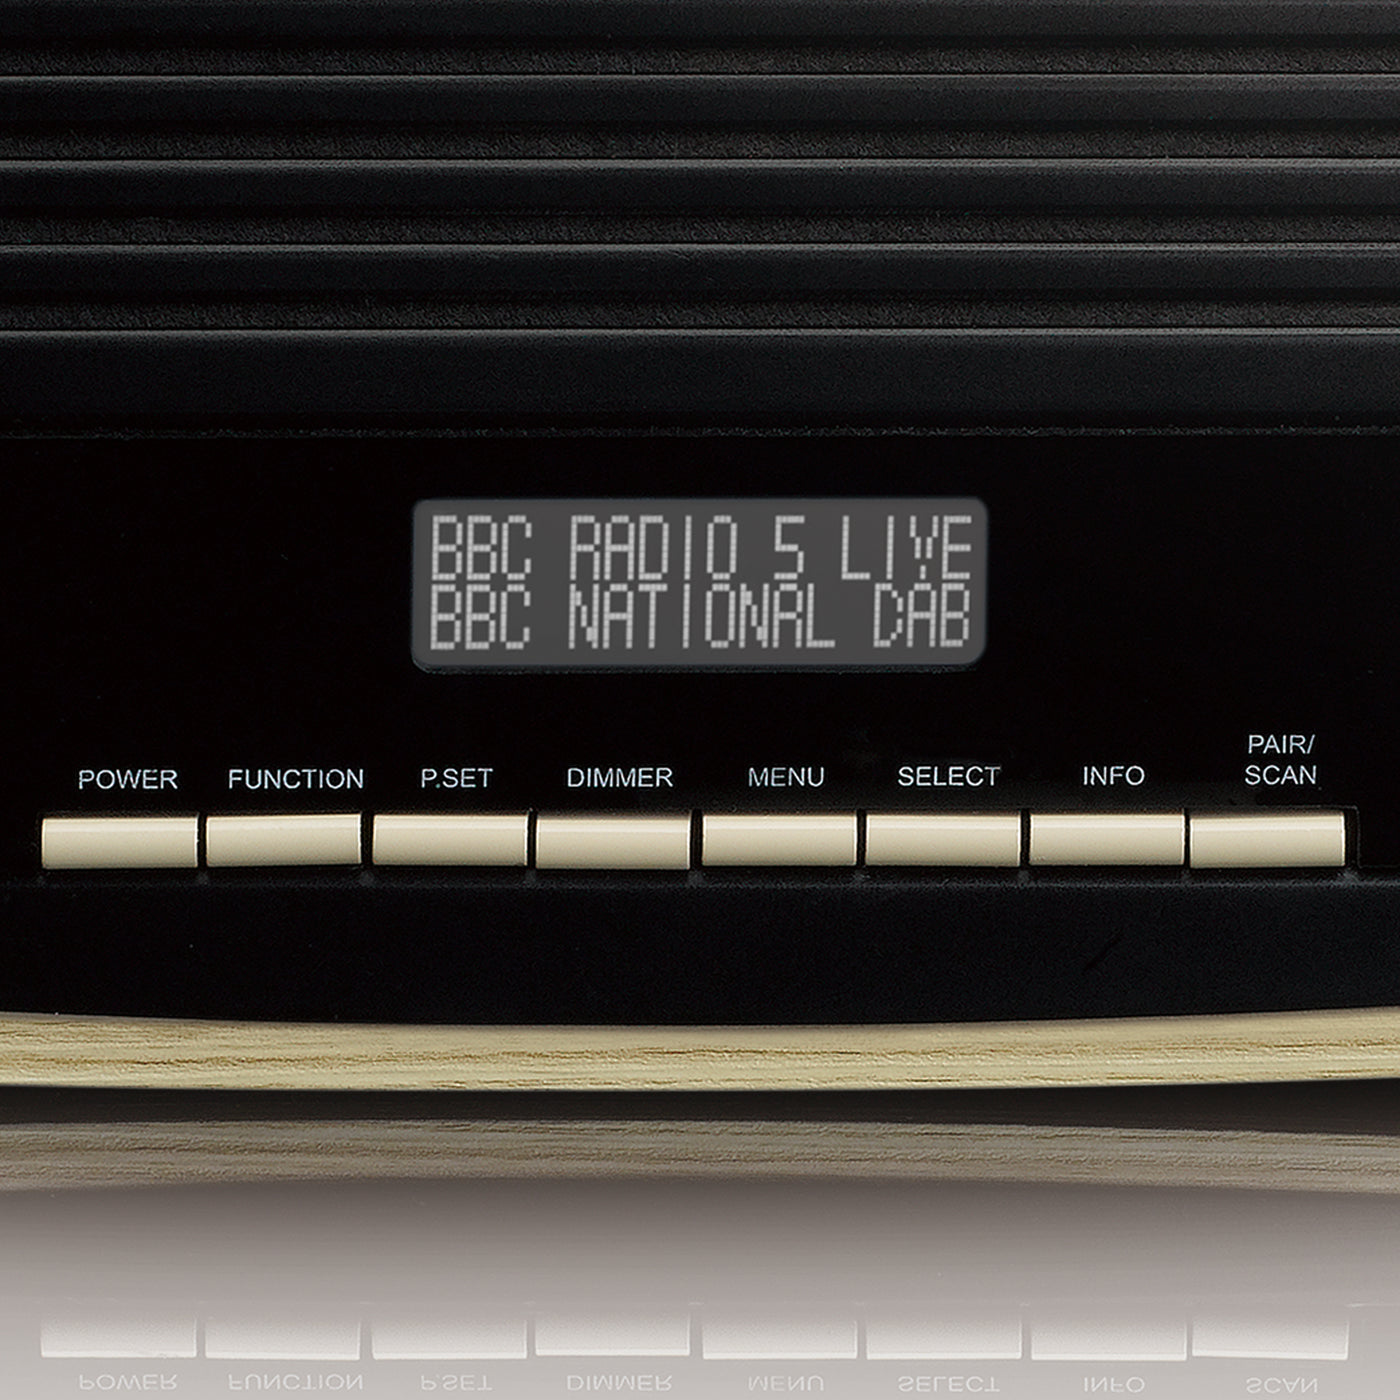 LENCO DAR-012WD - DAB+ FM Radio with Bluetooth®, AUX input and Alarm F –  Lenco-Catalog | Digitalradios (DAB+)